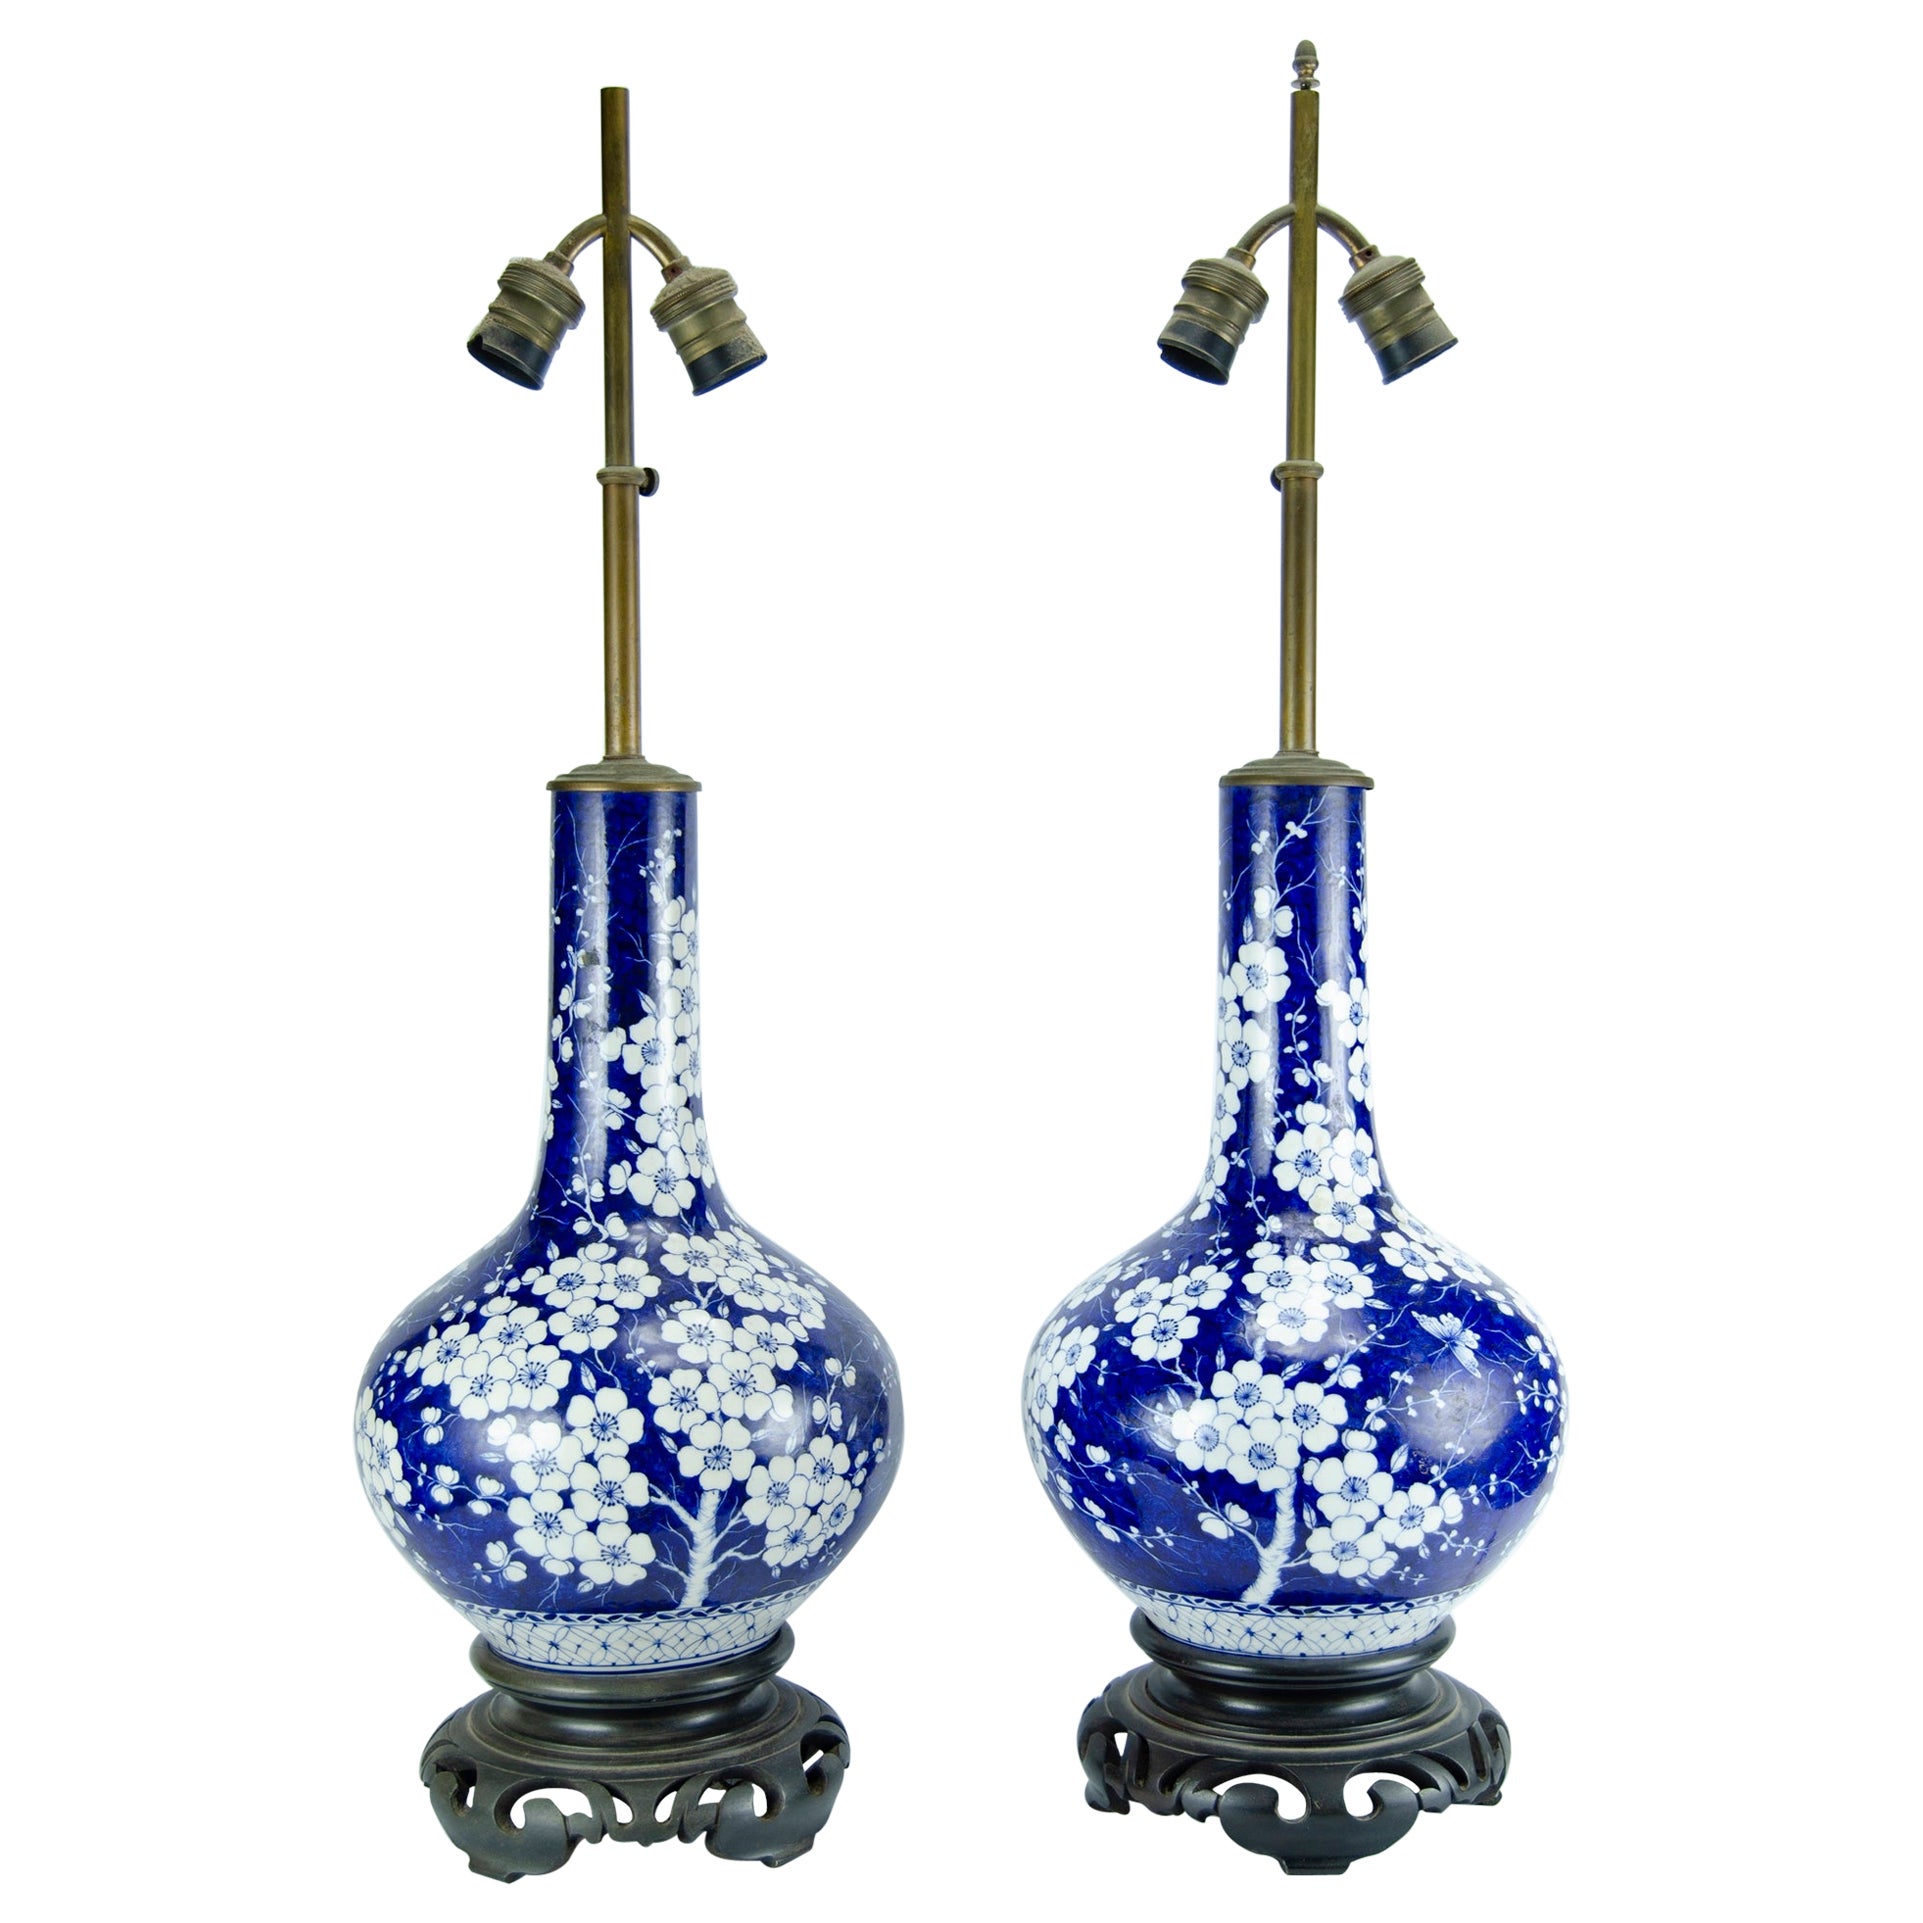 Pair of Table Lamps Origin China